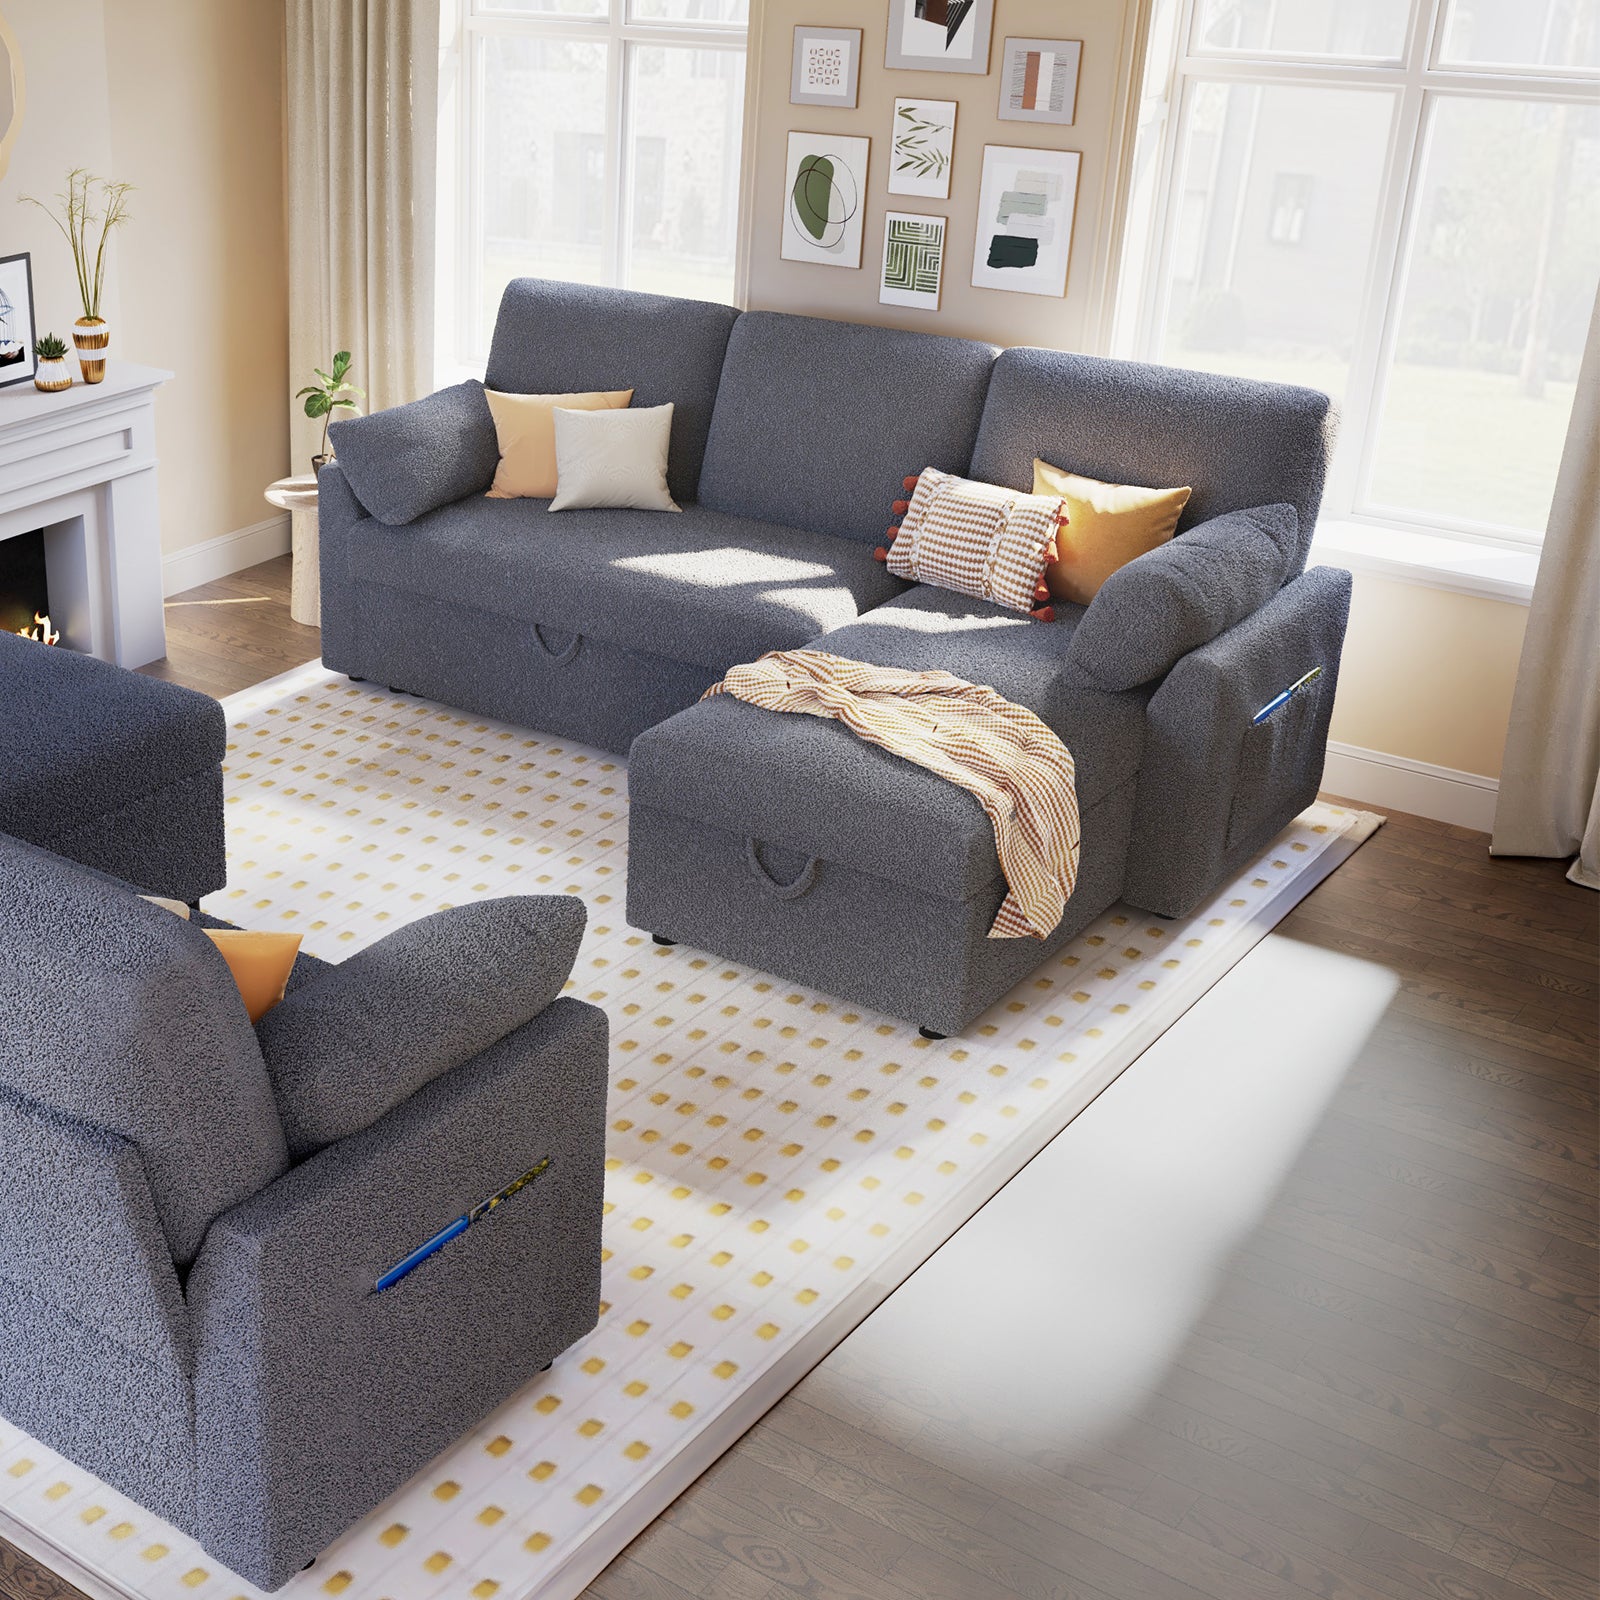 Easton - Sofá reclinable eléctrico con reposacabezas y lumbares eléctr –  Quality Home Furniture